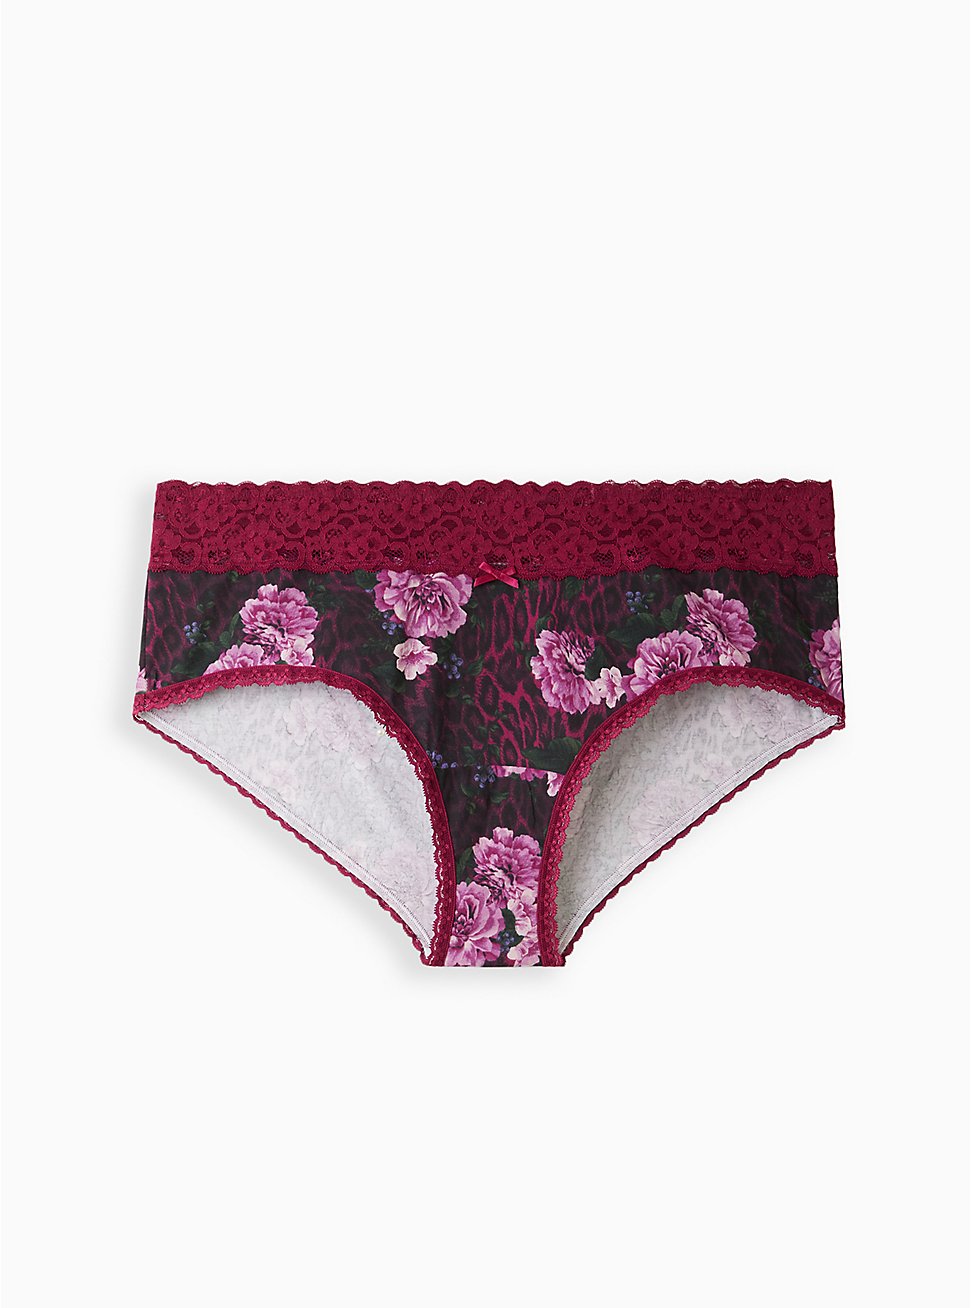 Wide Lace Trim Cheeky Panty - Cotton Floral Black, , hi-res